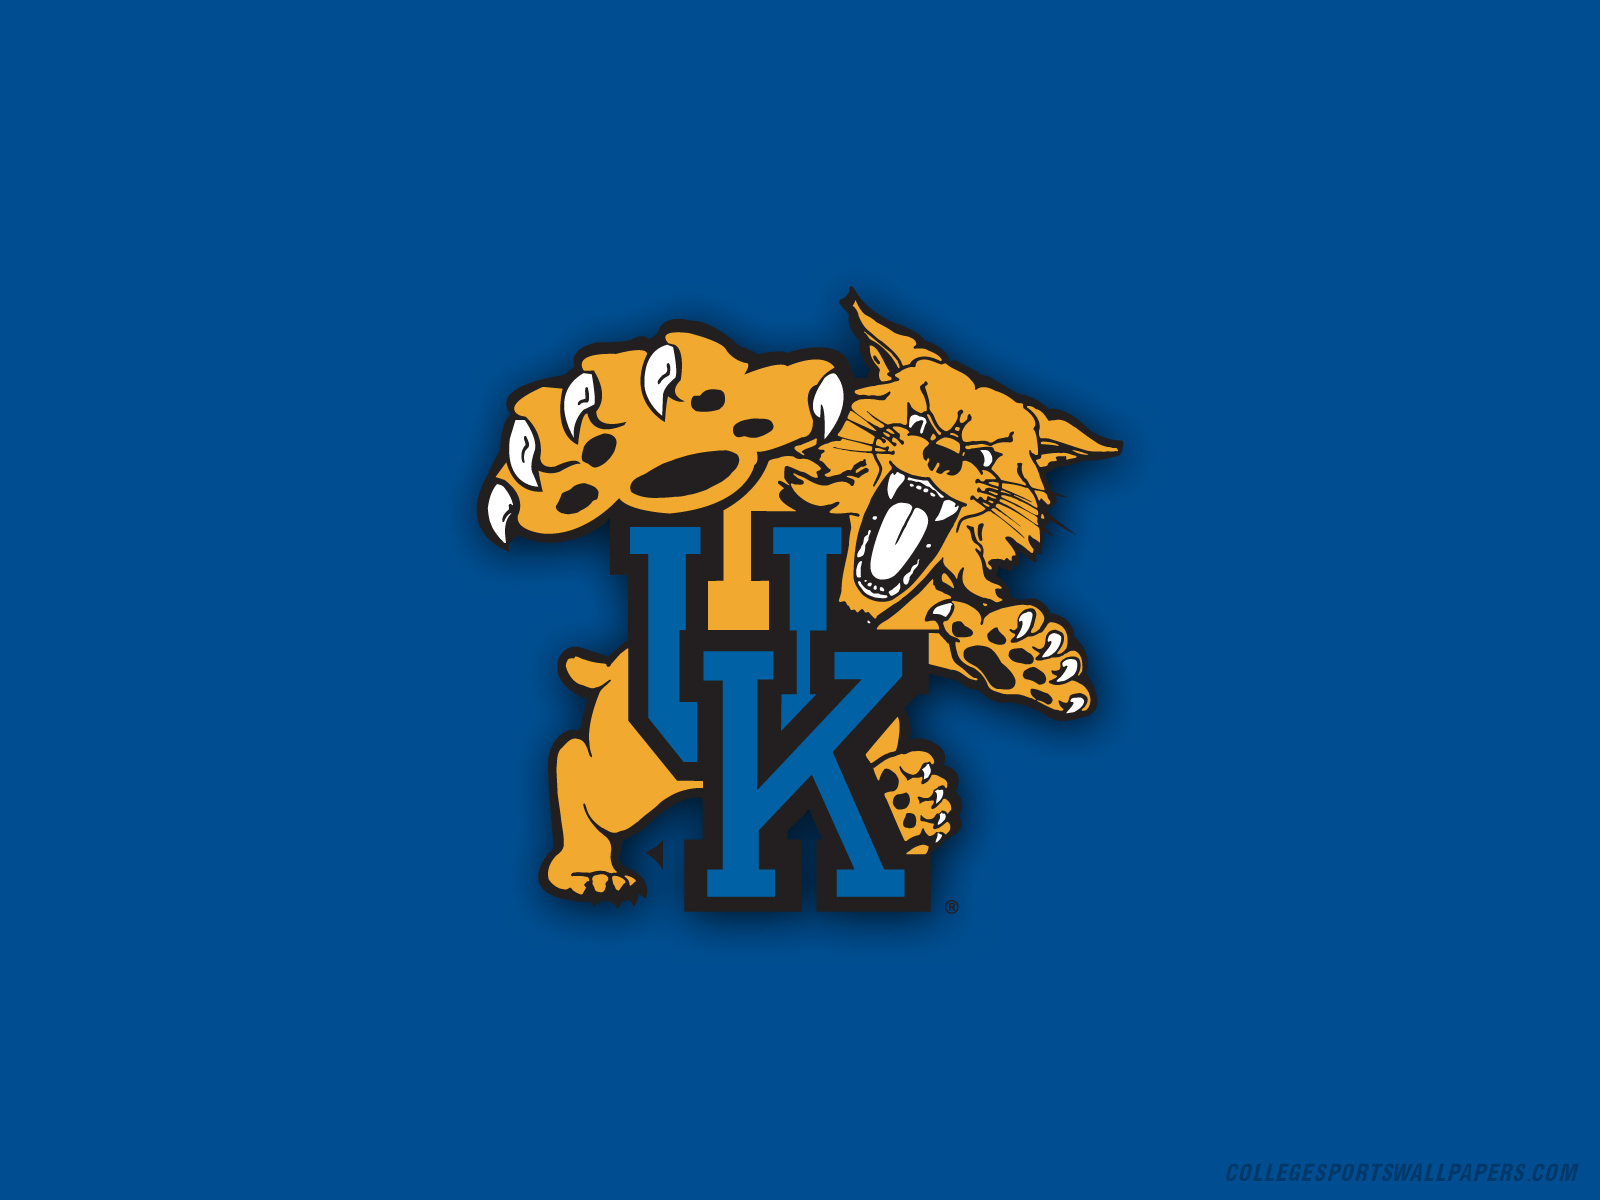 Wildcats - Kentucky Basketball Wallpaper (9328330) - Fanpop